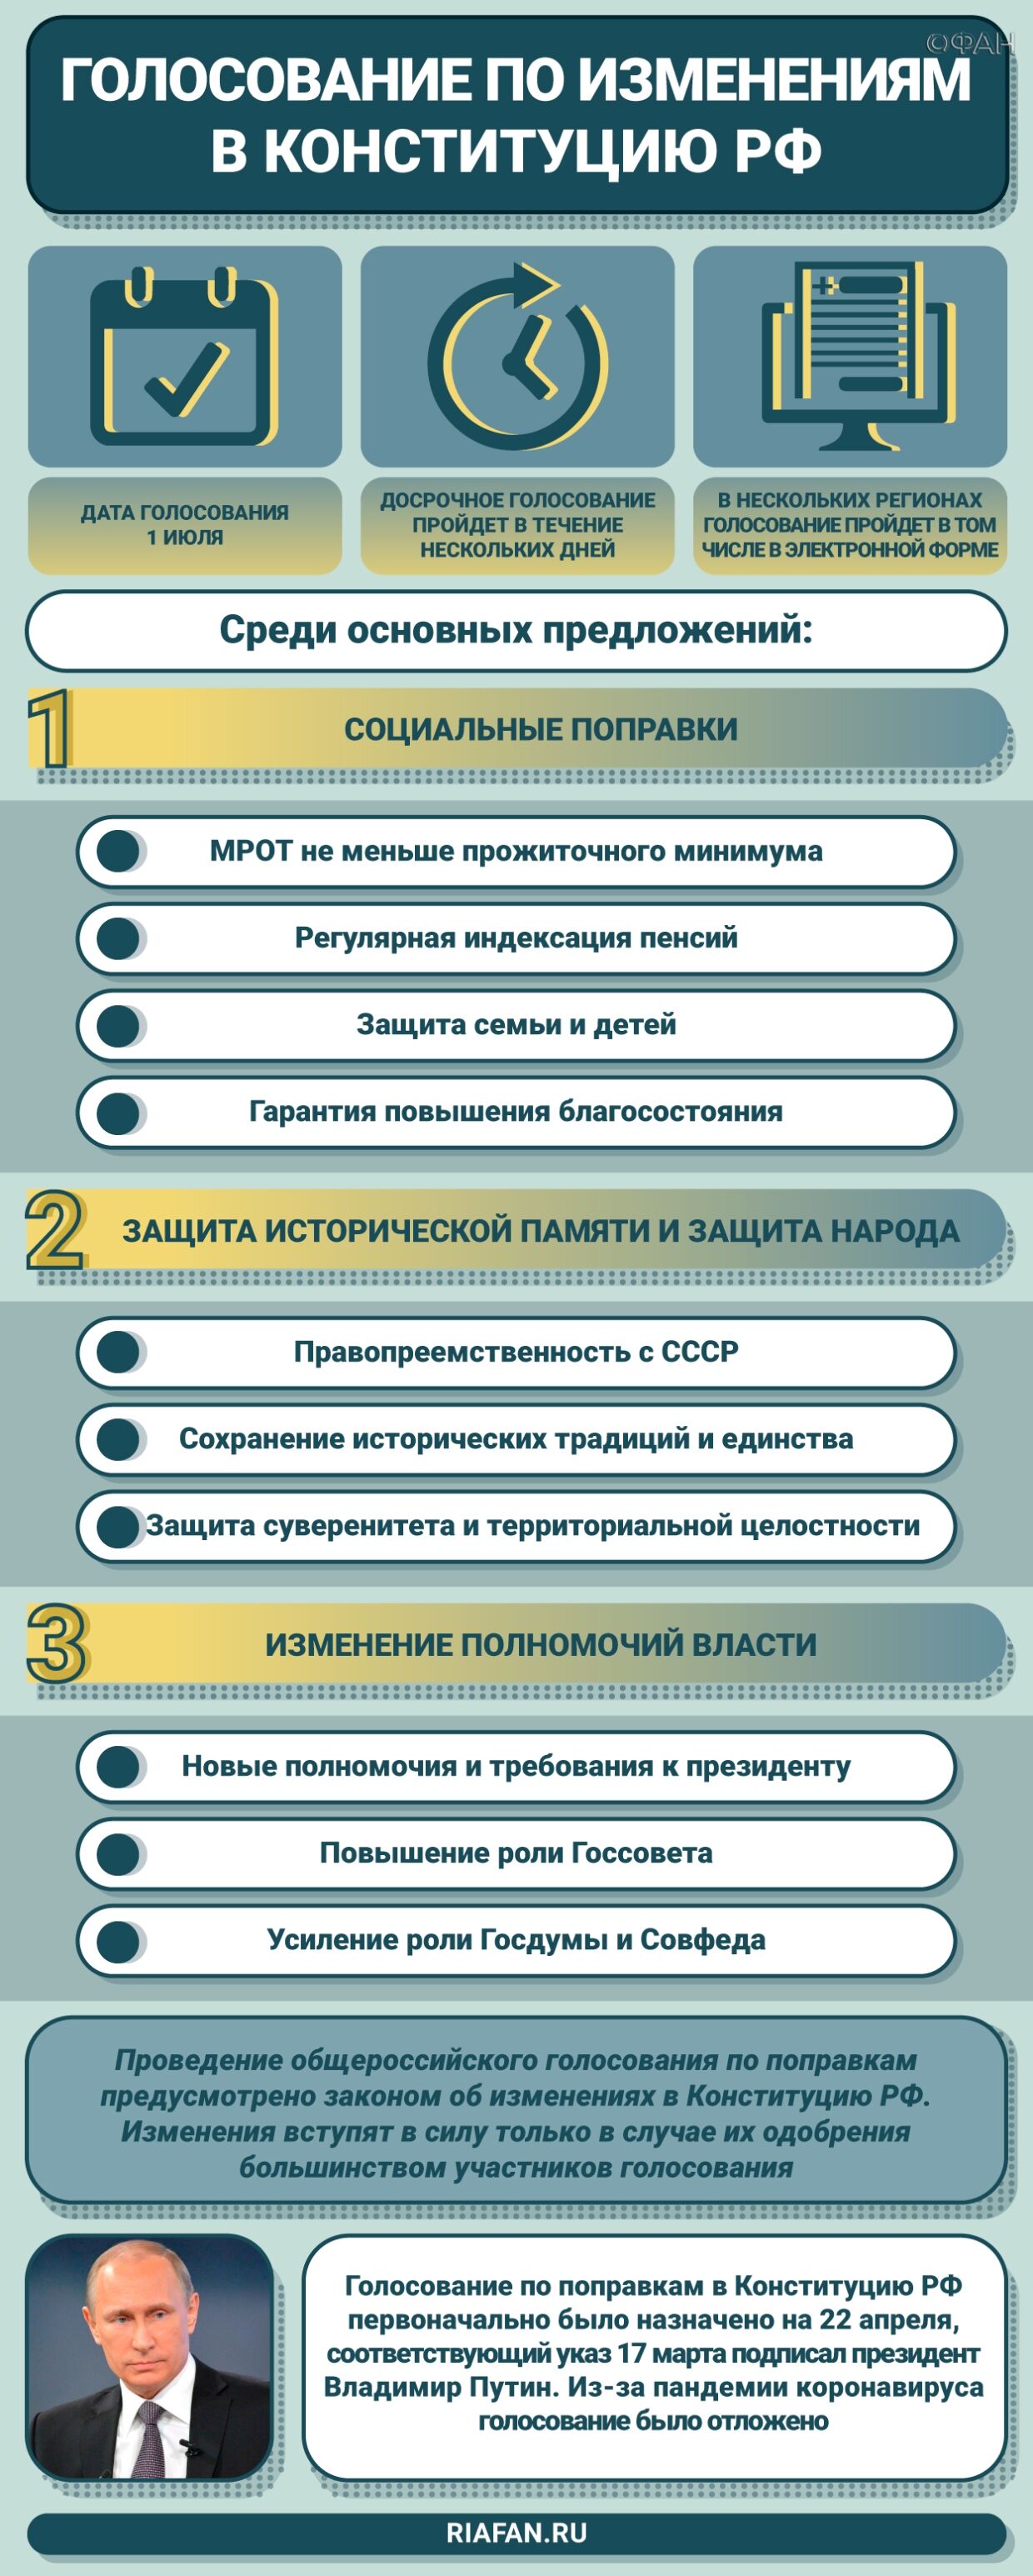 Более полумиллиона москвичей 25 июня приняли участие в электронном голосовании  скрин%20конст